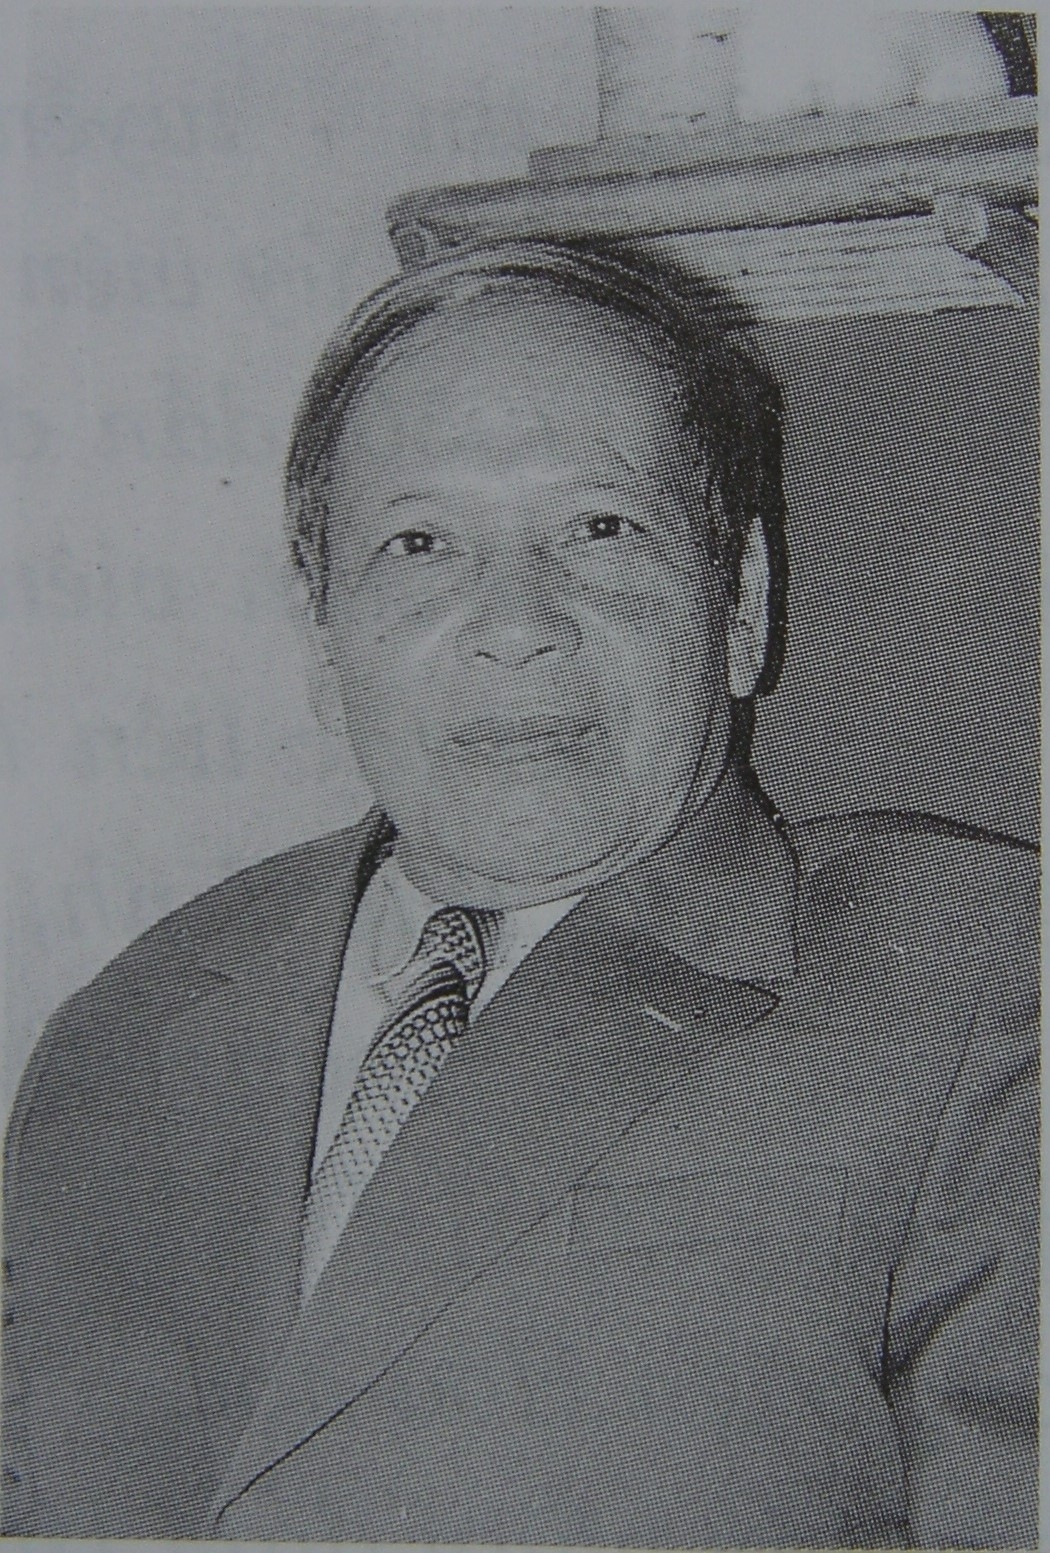 Tổng cục Trưởng Nguyễn Văn Biên (1923-1997) 